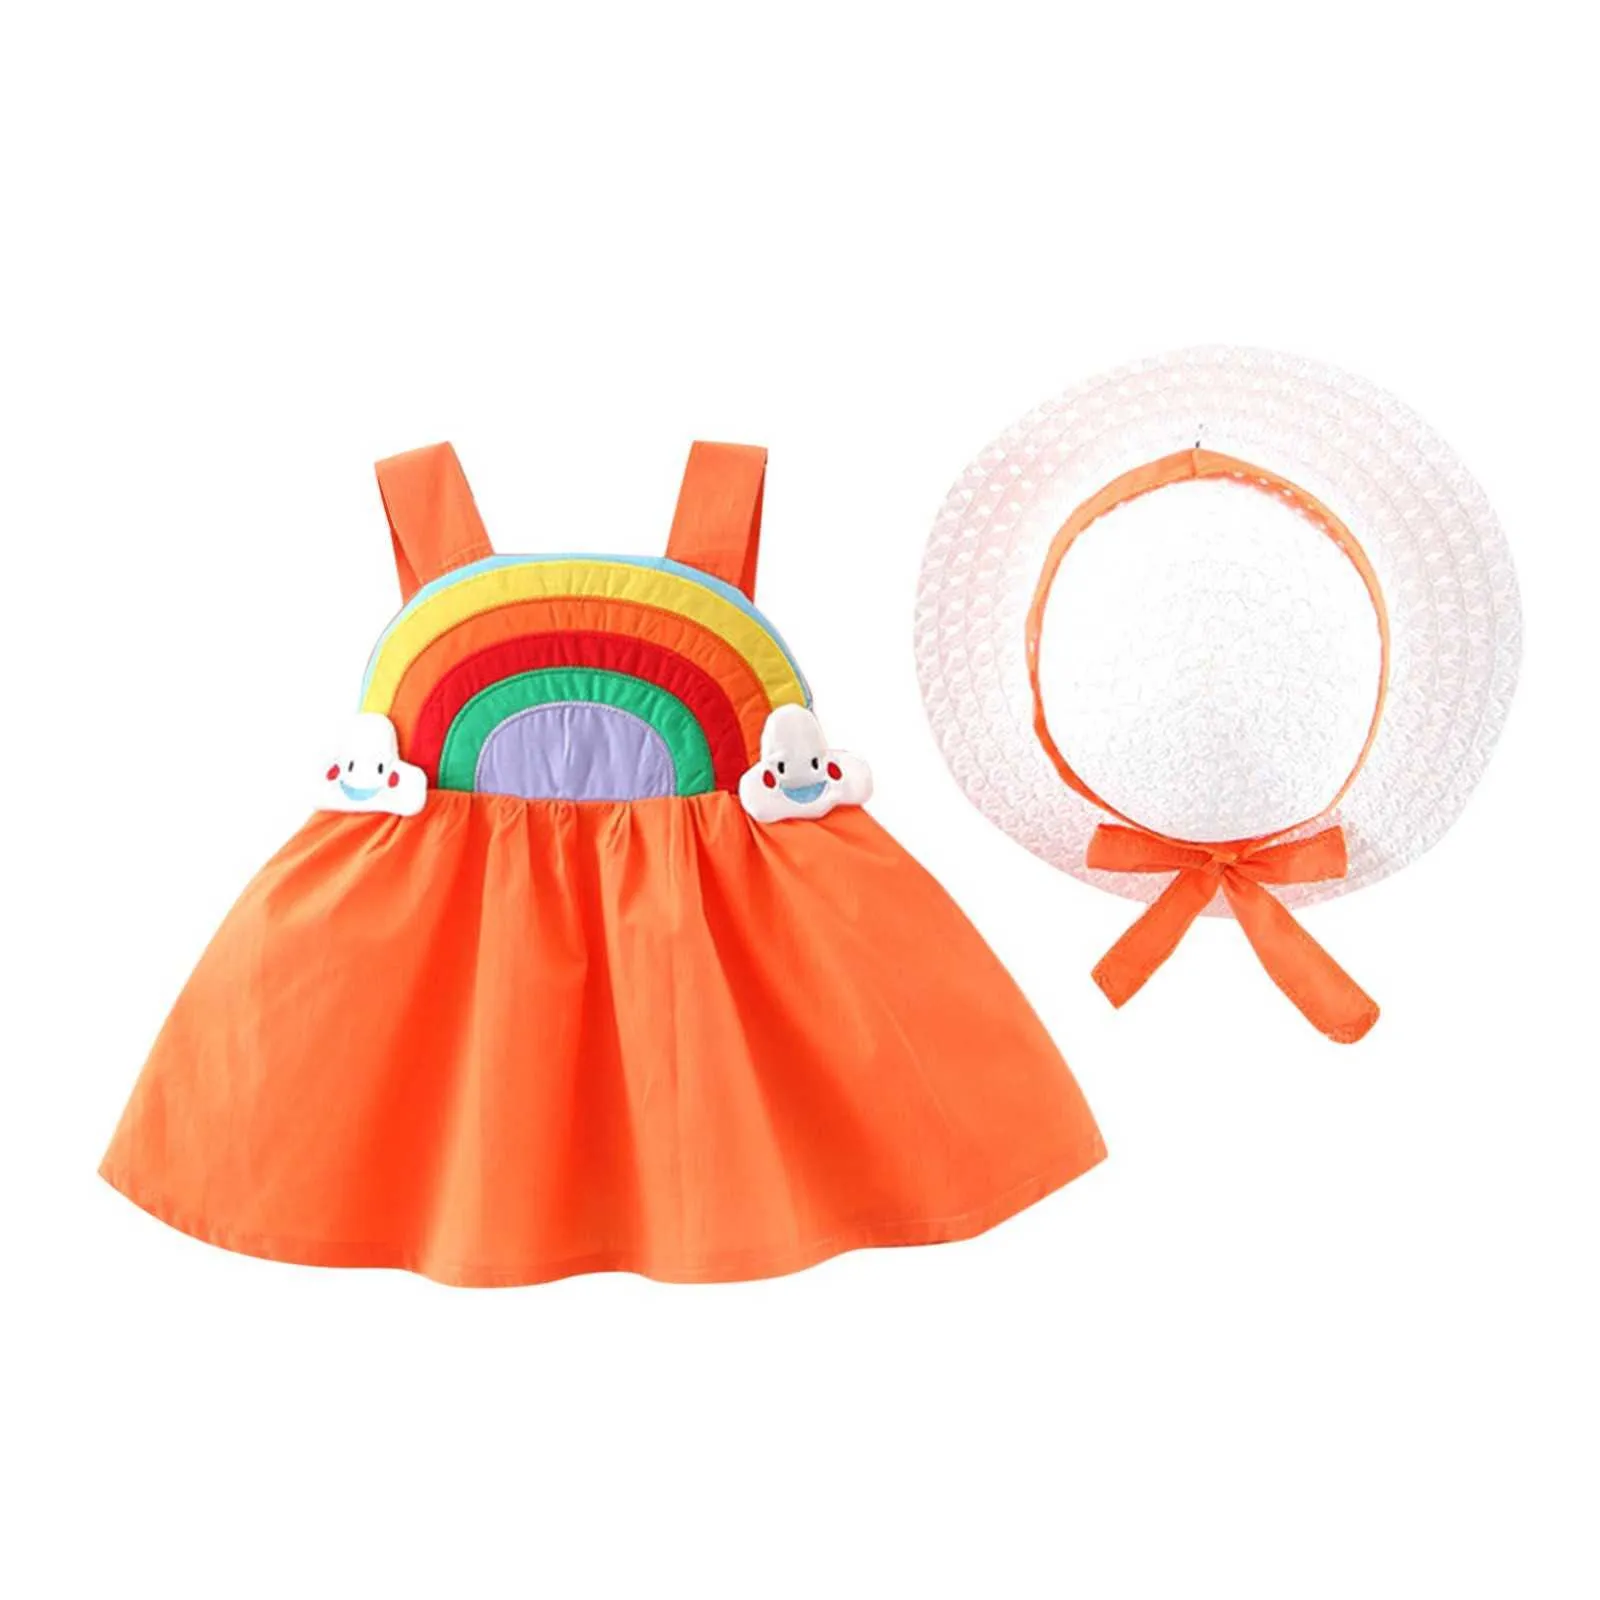 40 # Barnkläder Babyflickor Klänningar Rainbow Patterns Printing Ärmlös Princess Dress + Hat Sommarflicka Klänning Set Outfit Q0716